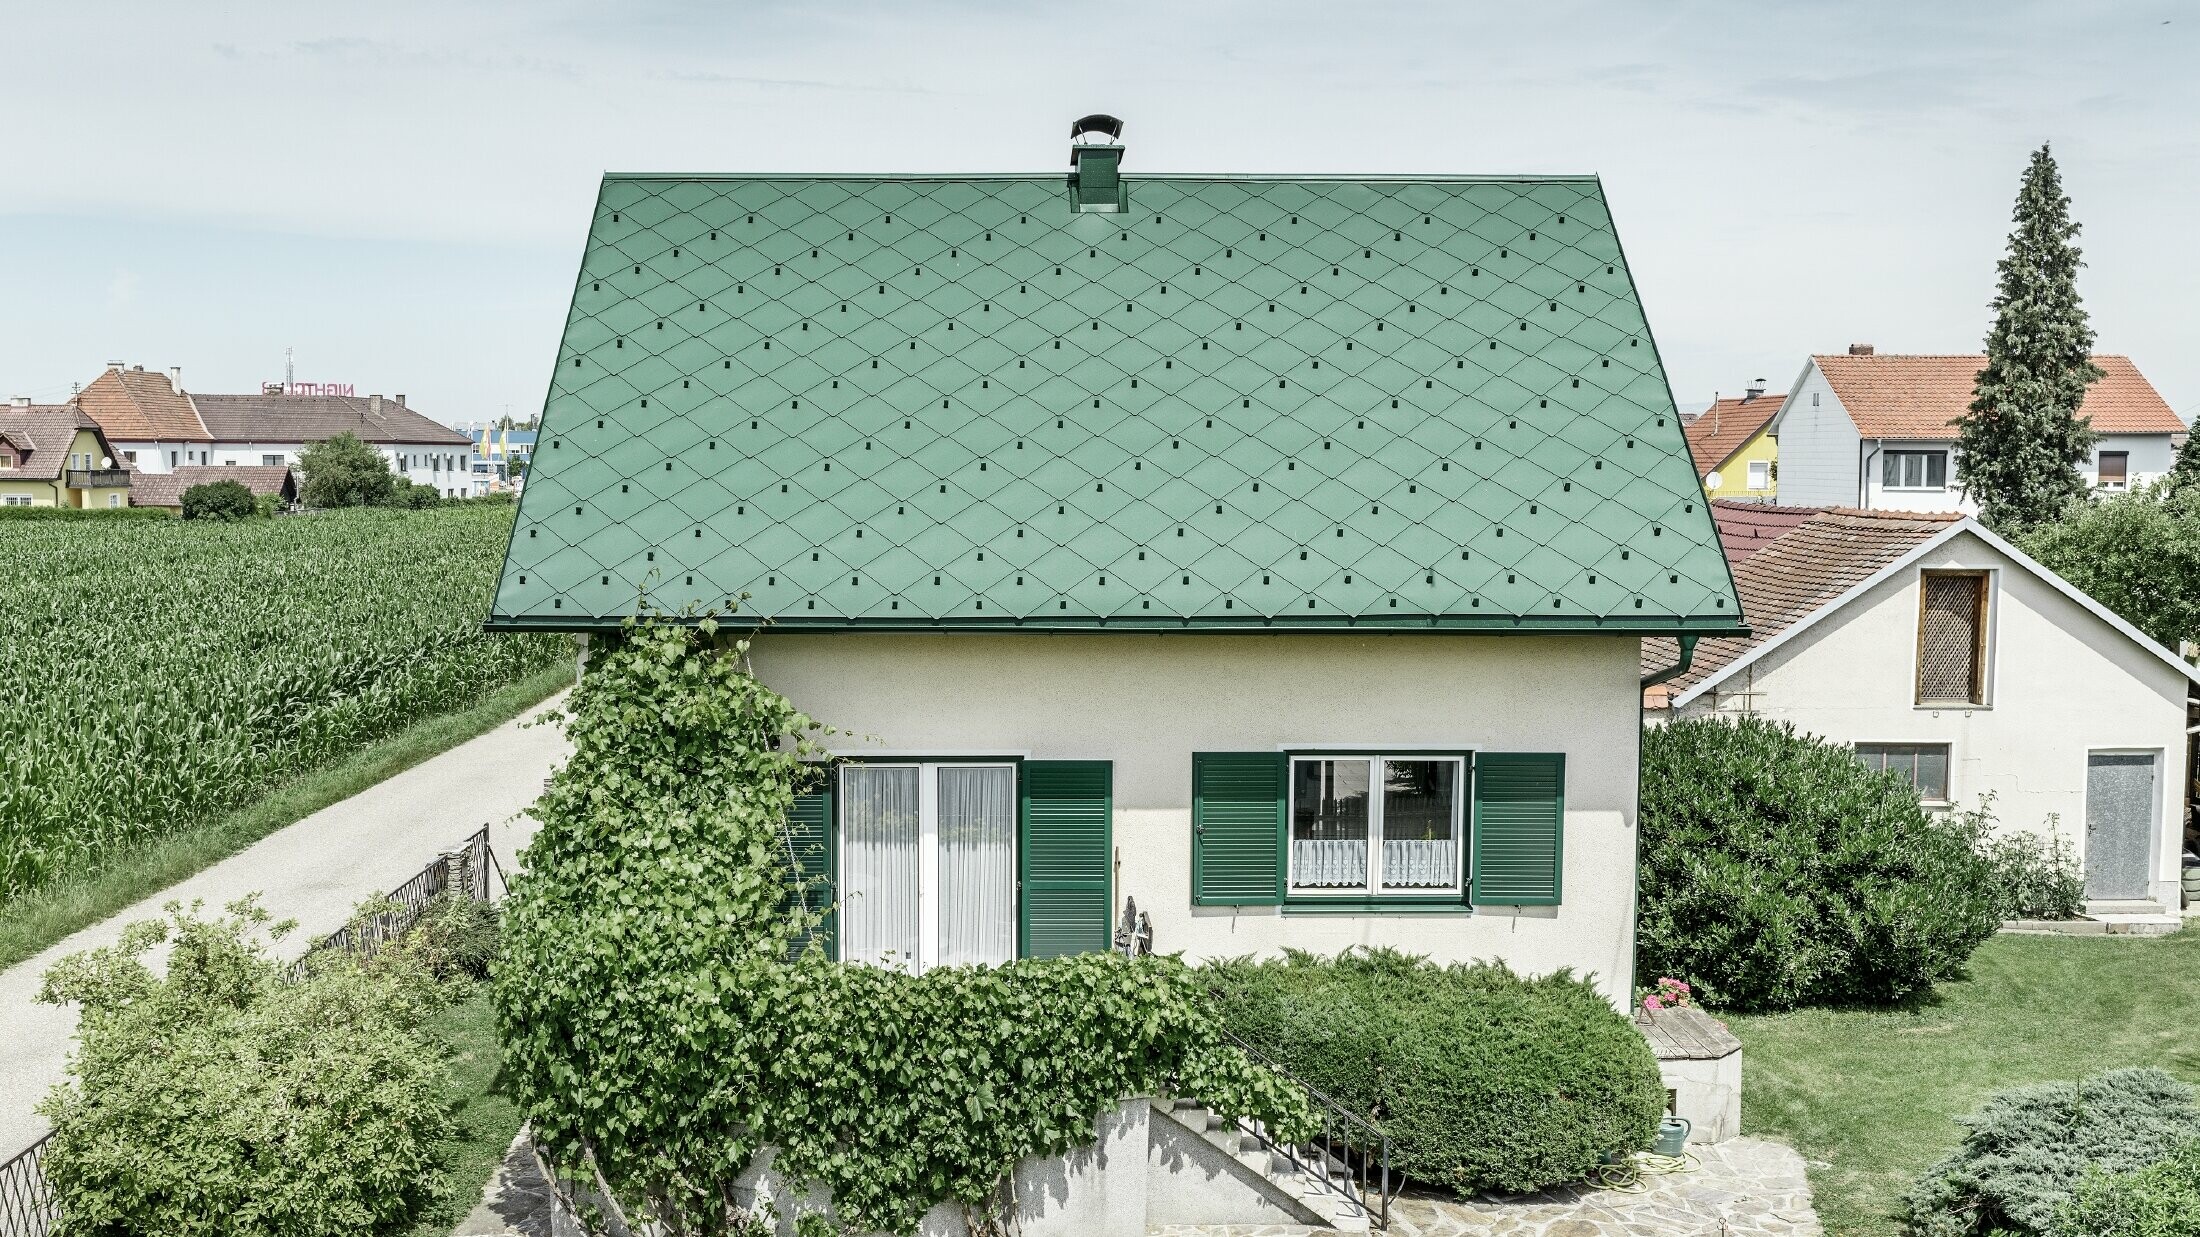 Klasszikus családi ház nyeregtetővel, mohazöld alumínium tetőfedéssel, zöld redőnyökkel. A tetőt PREFA 44 × 44-es tetőfedő rombuszok borítják P.10 mohazöld színben.